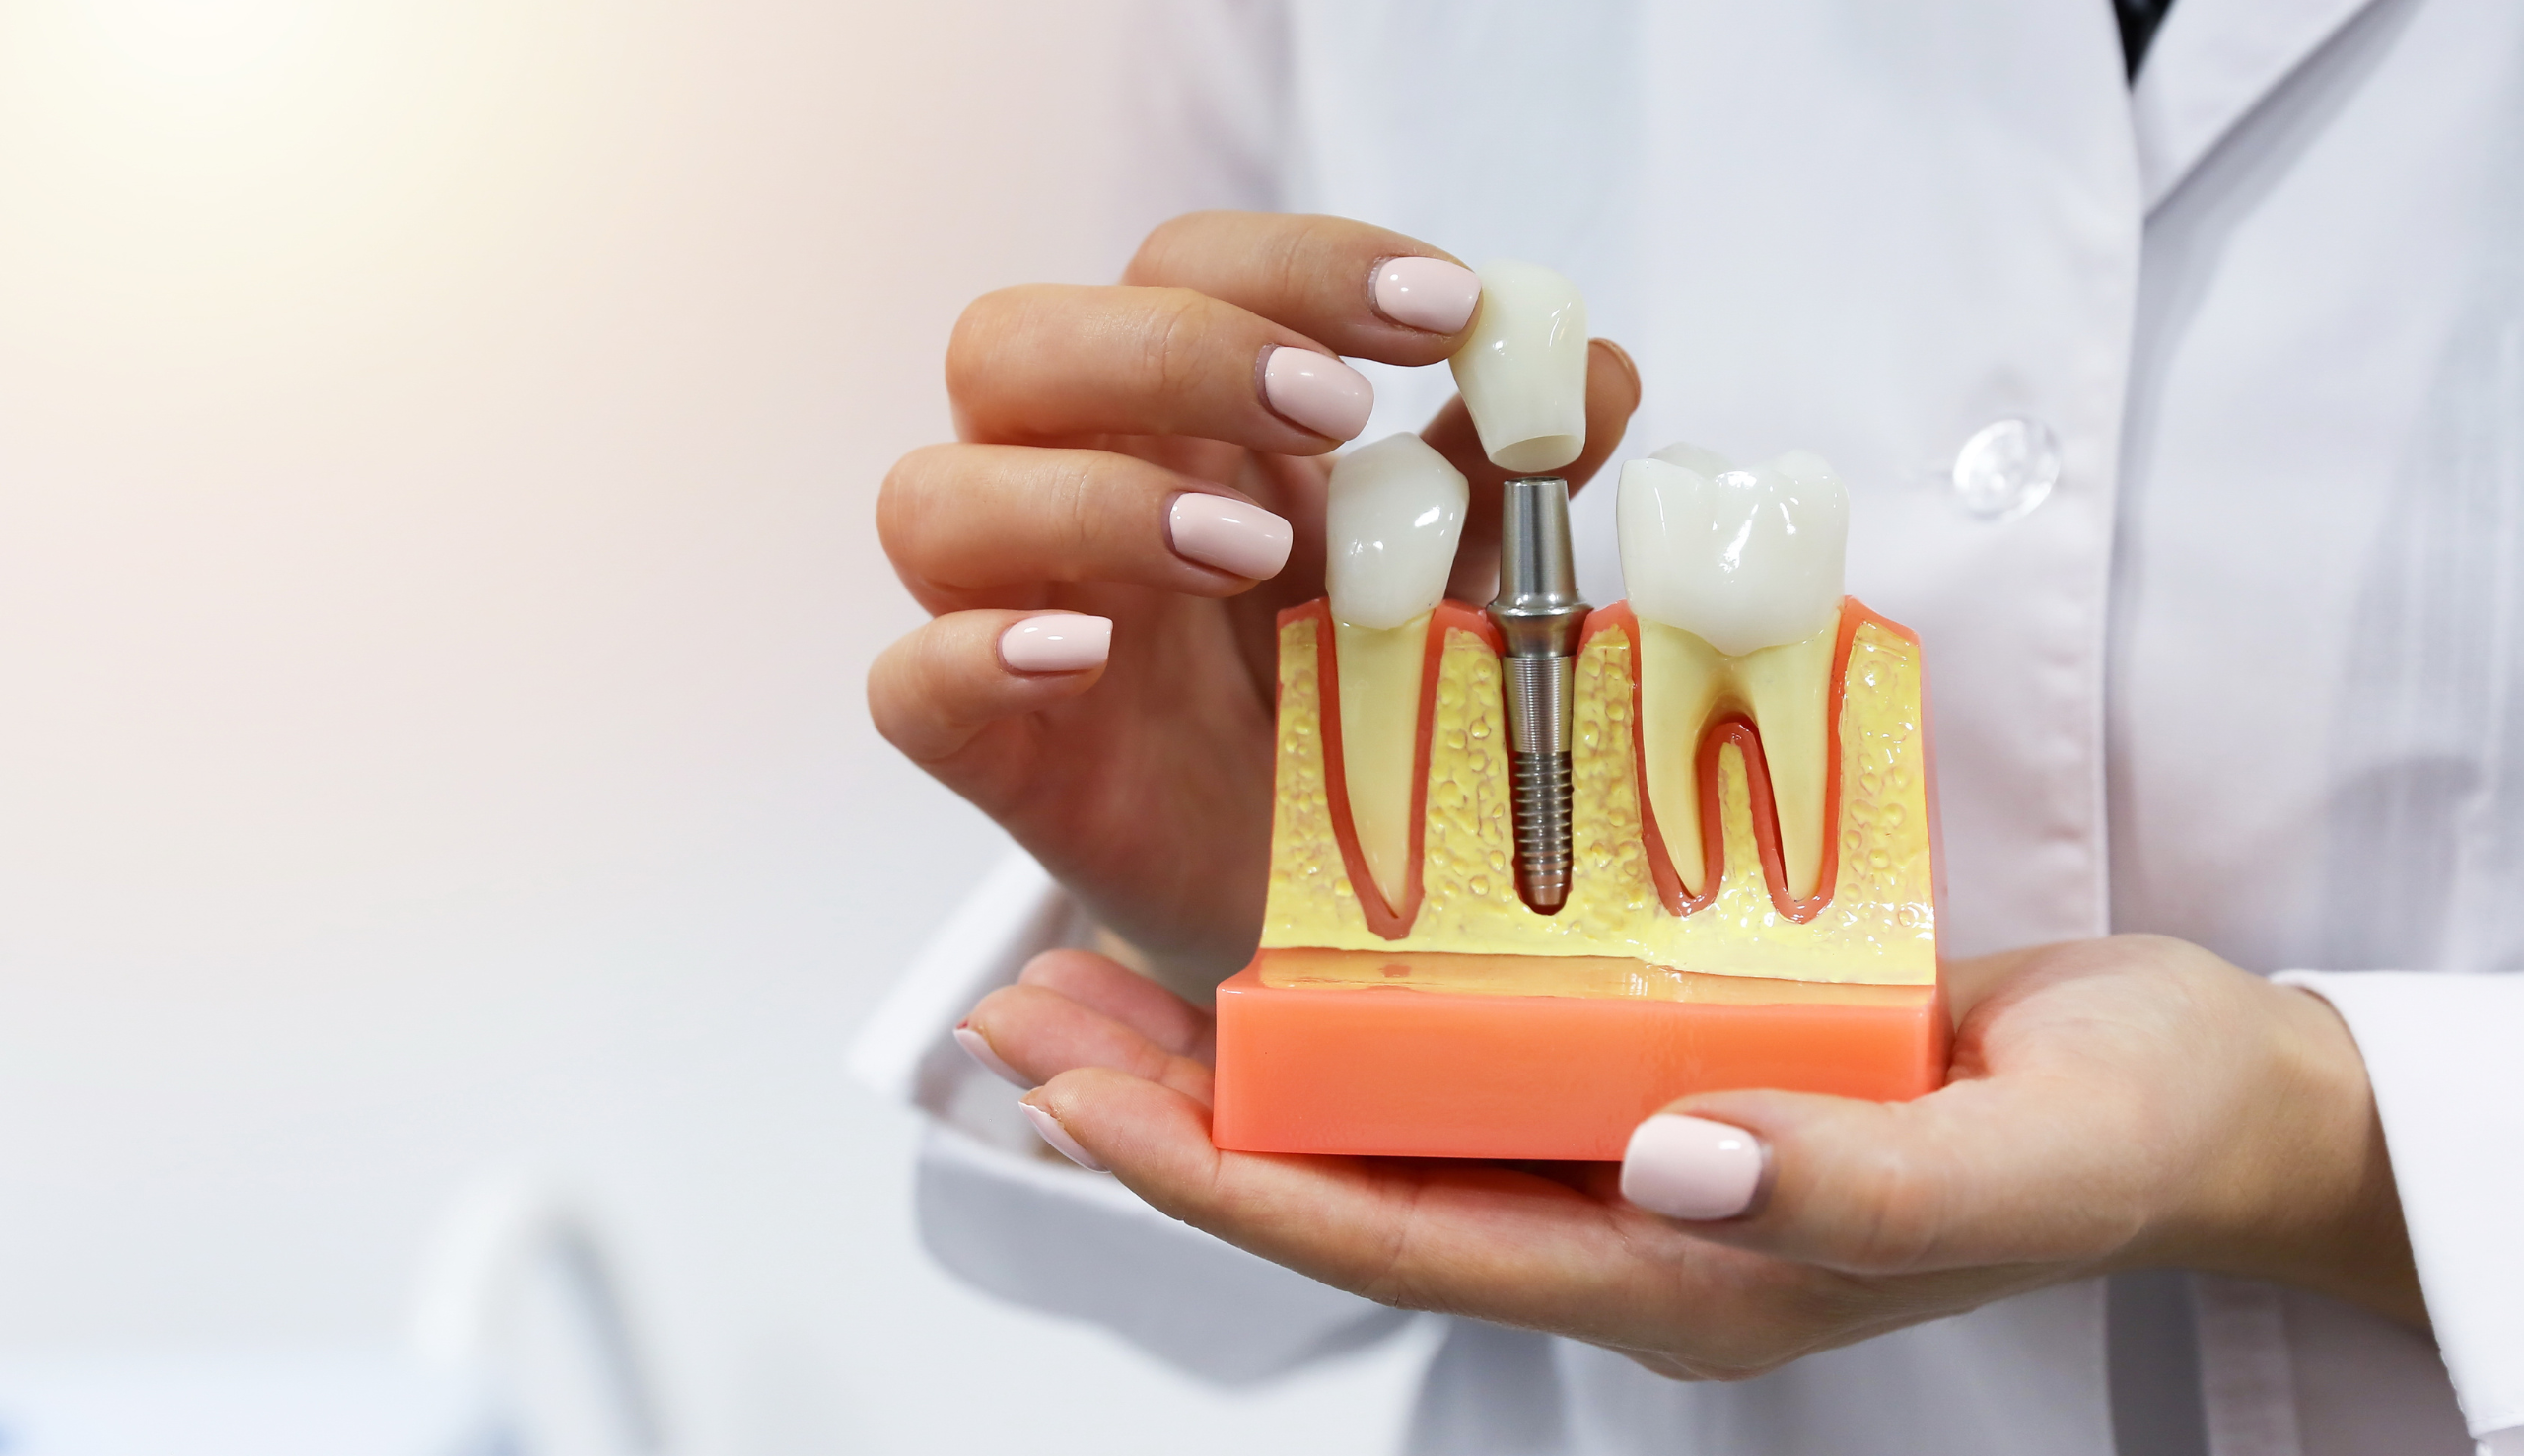 Tout savoir sur les implants dentaires | Clinique dentaire Sana Oris | Paris